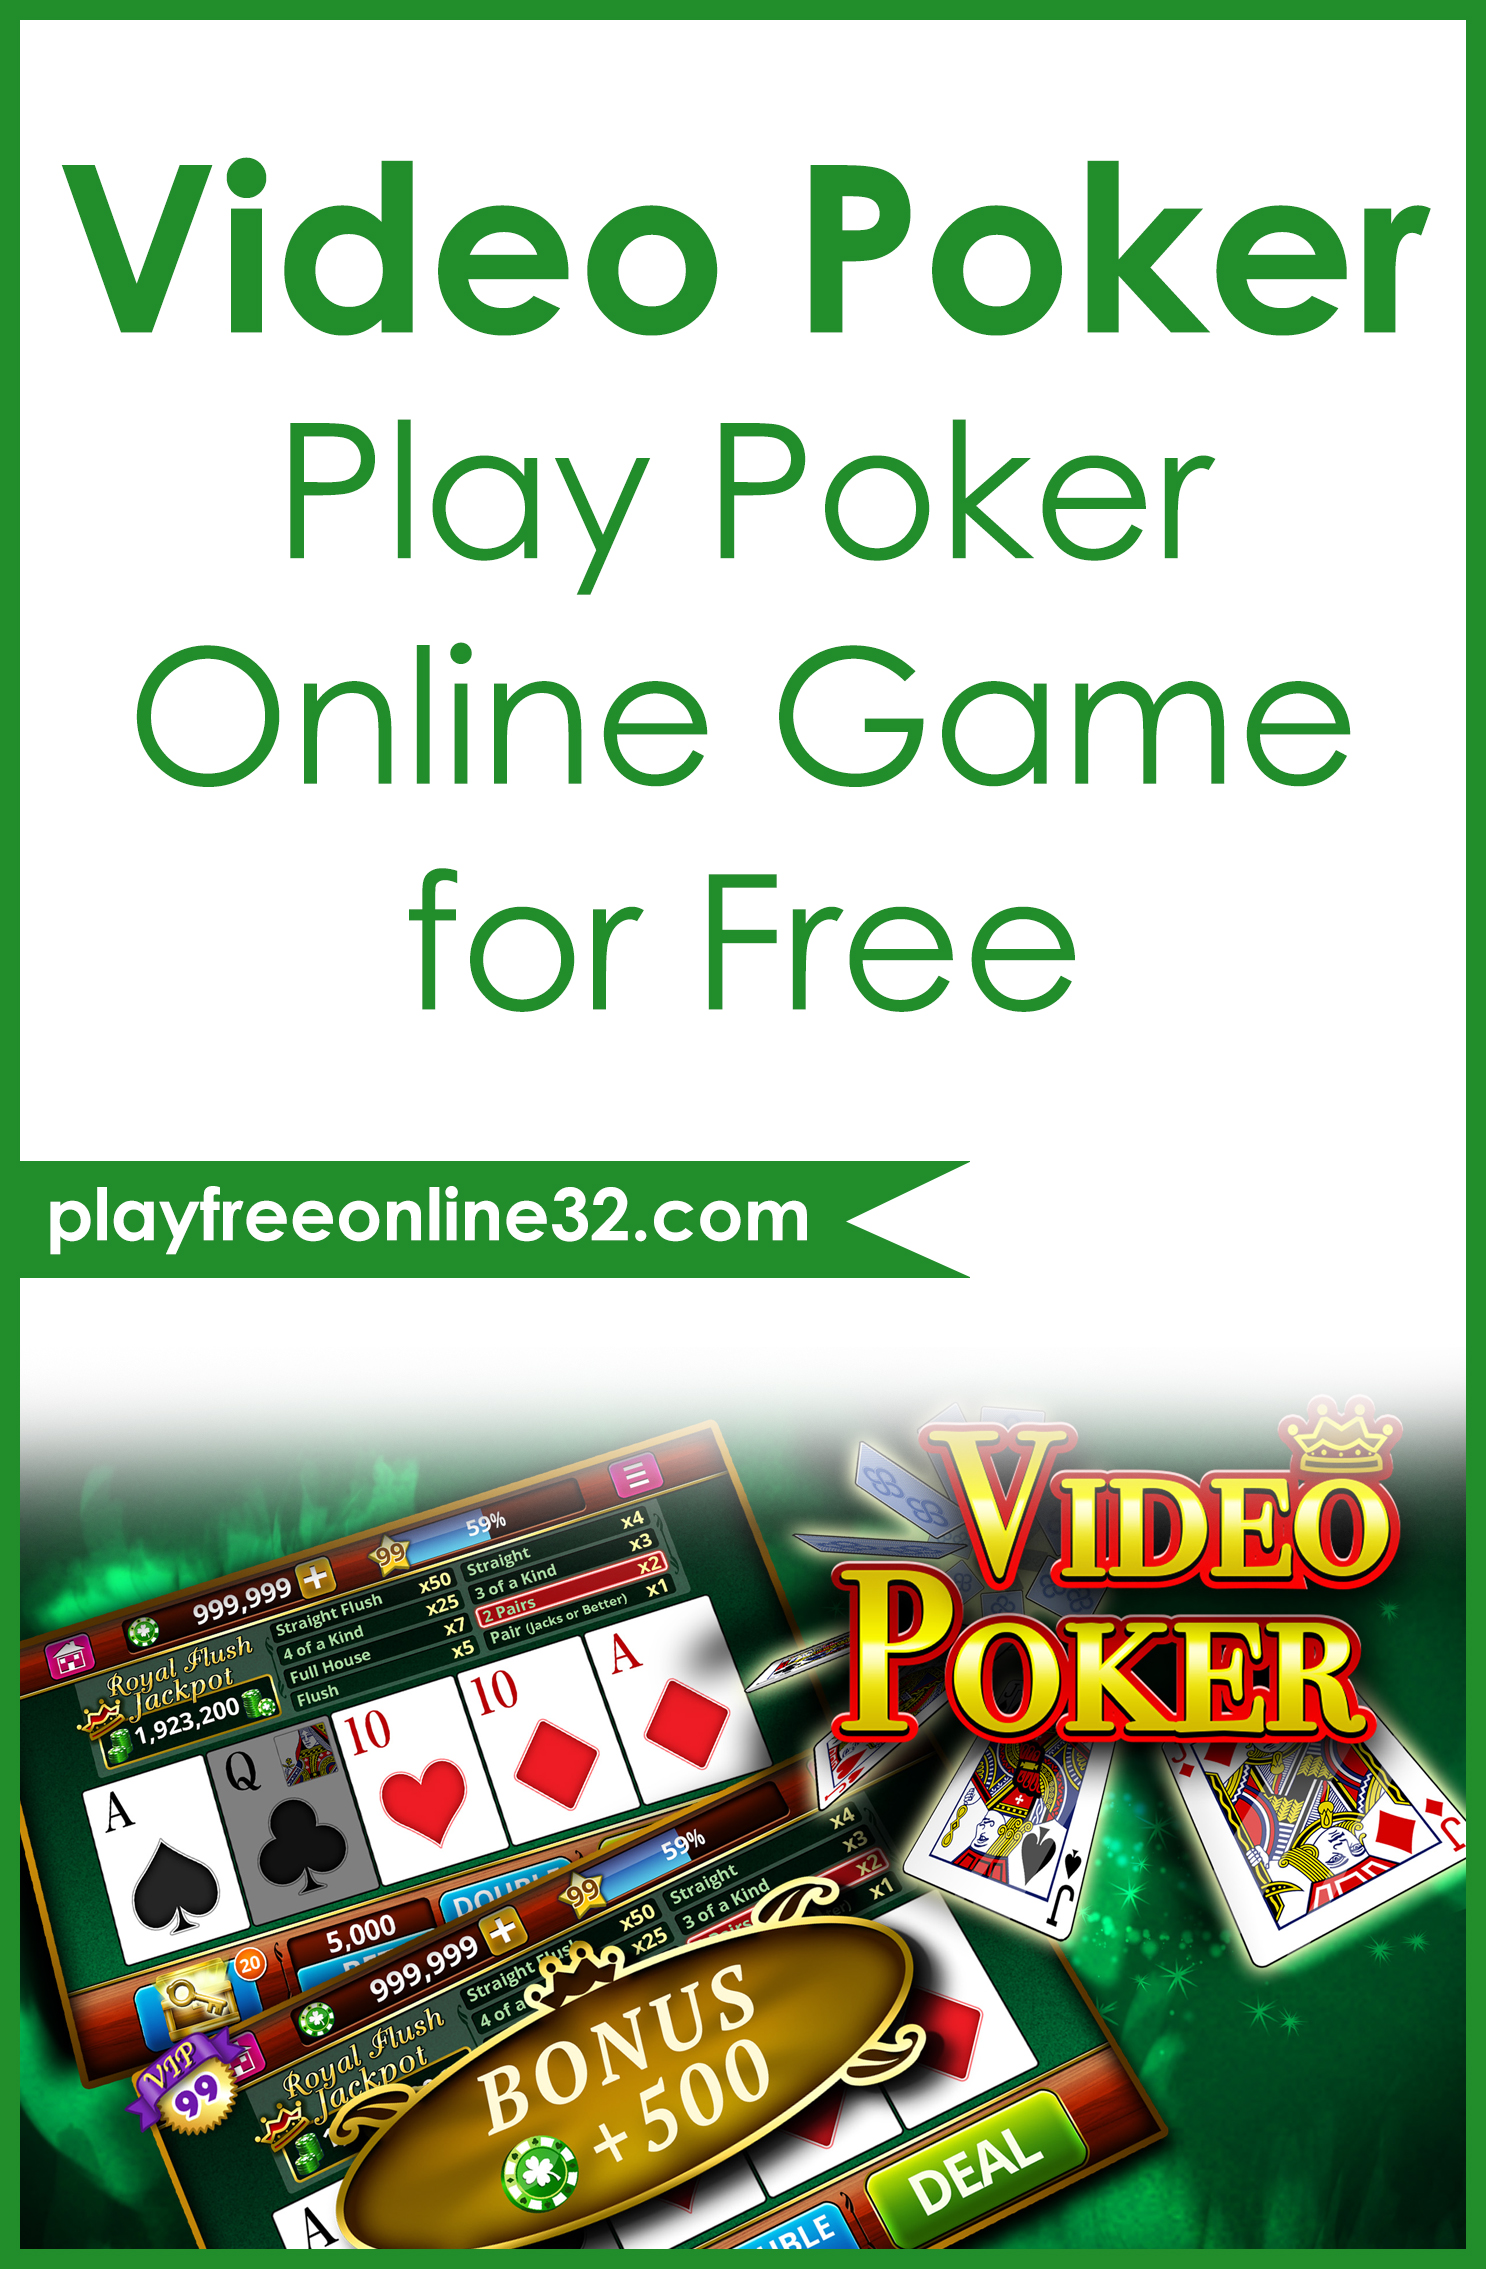 Video Poker • Play Poker Online Game for Free Pinterest